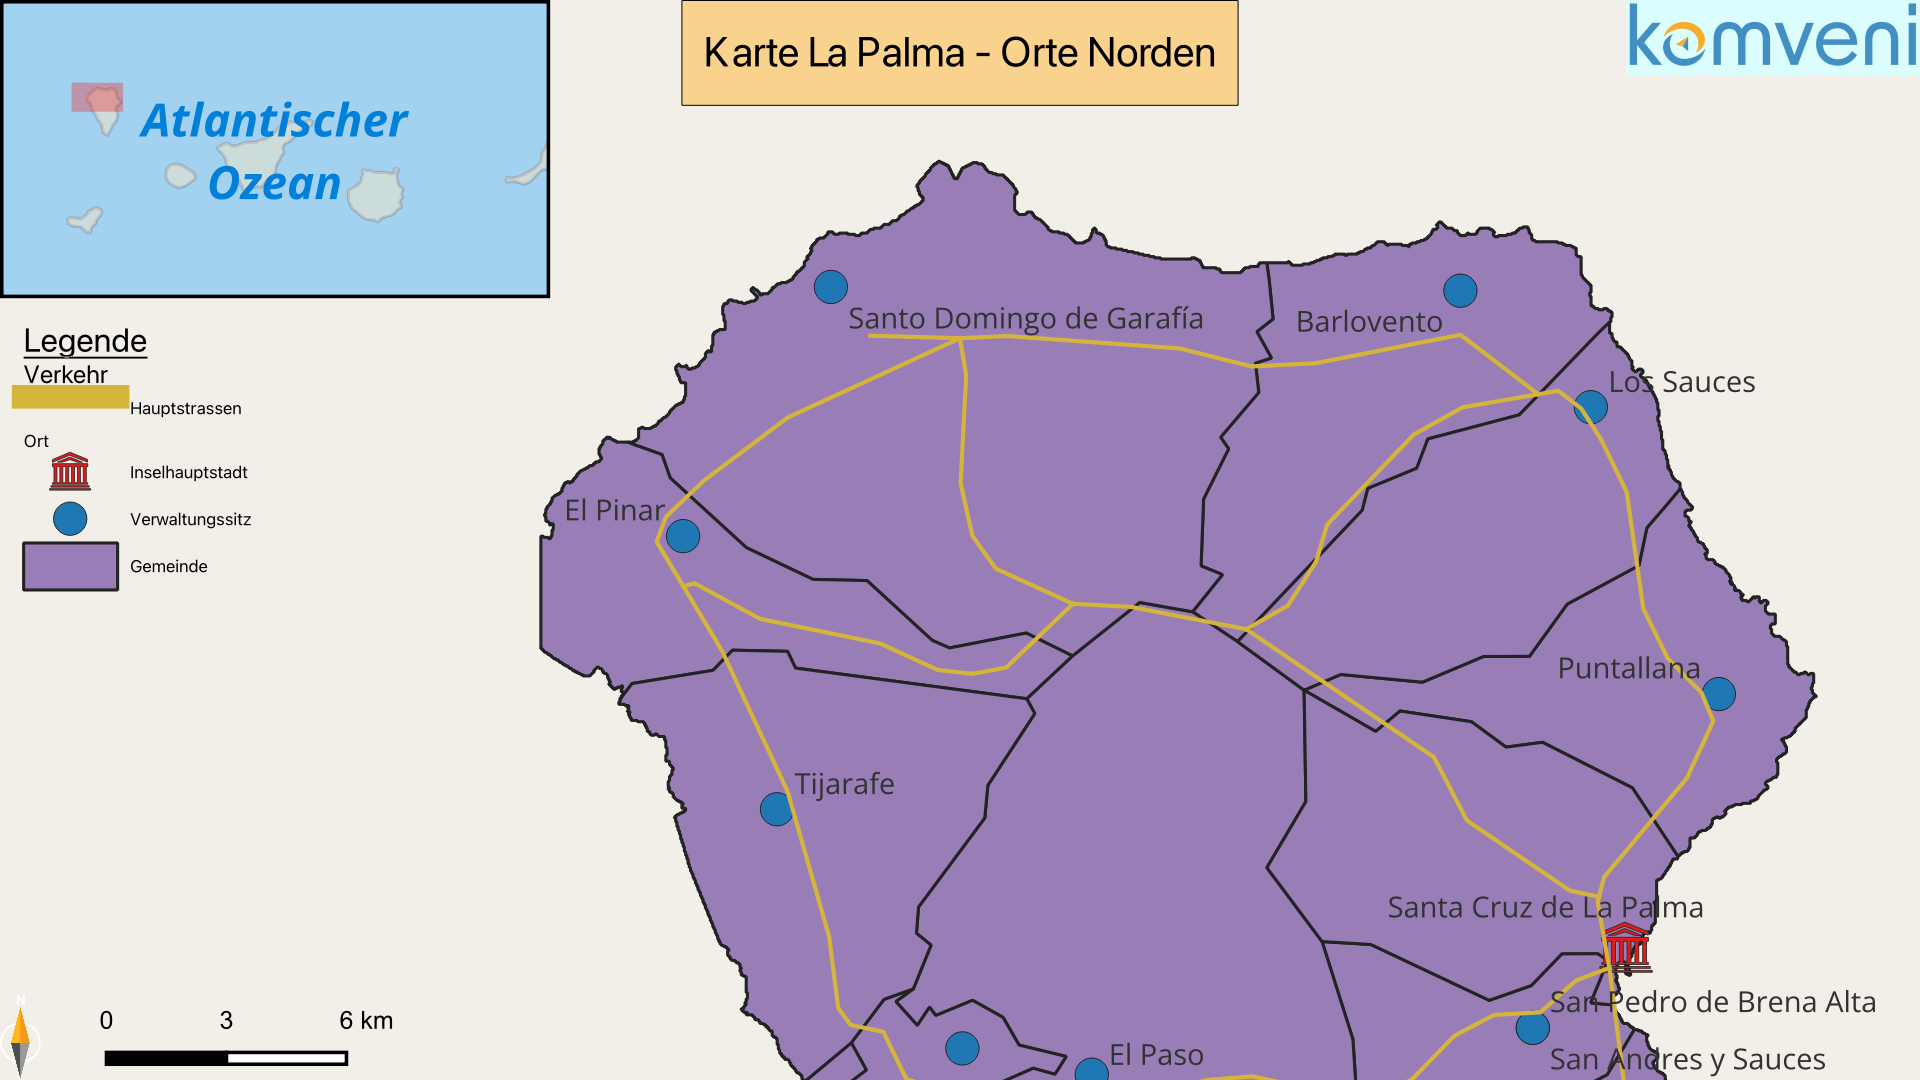 Karte La Palma Orte Norden